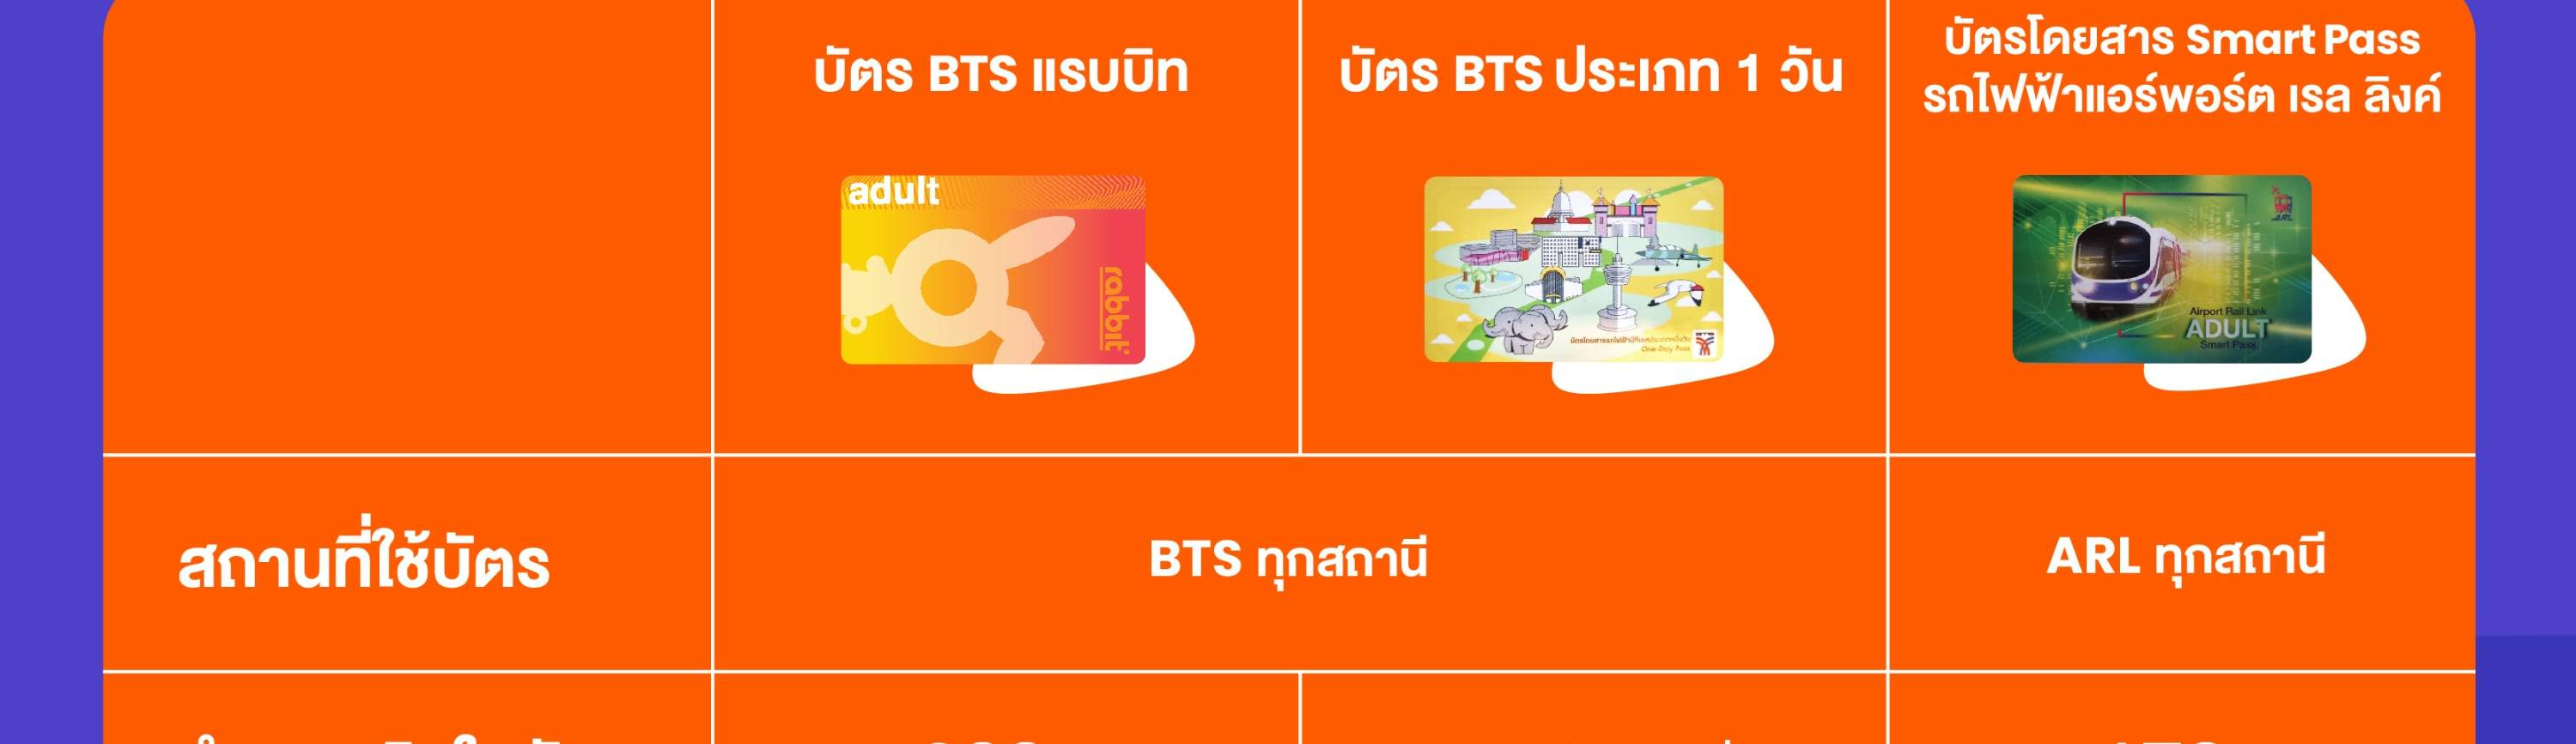 บัตรแรบบิท (Rabbit Card) สำหรับโดยสารรถไฟฟ้าบีทีเอส - Klook ประเทศไทย